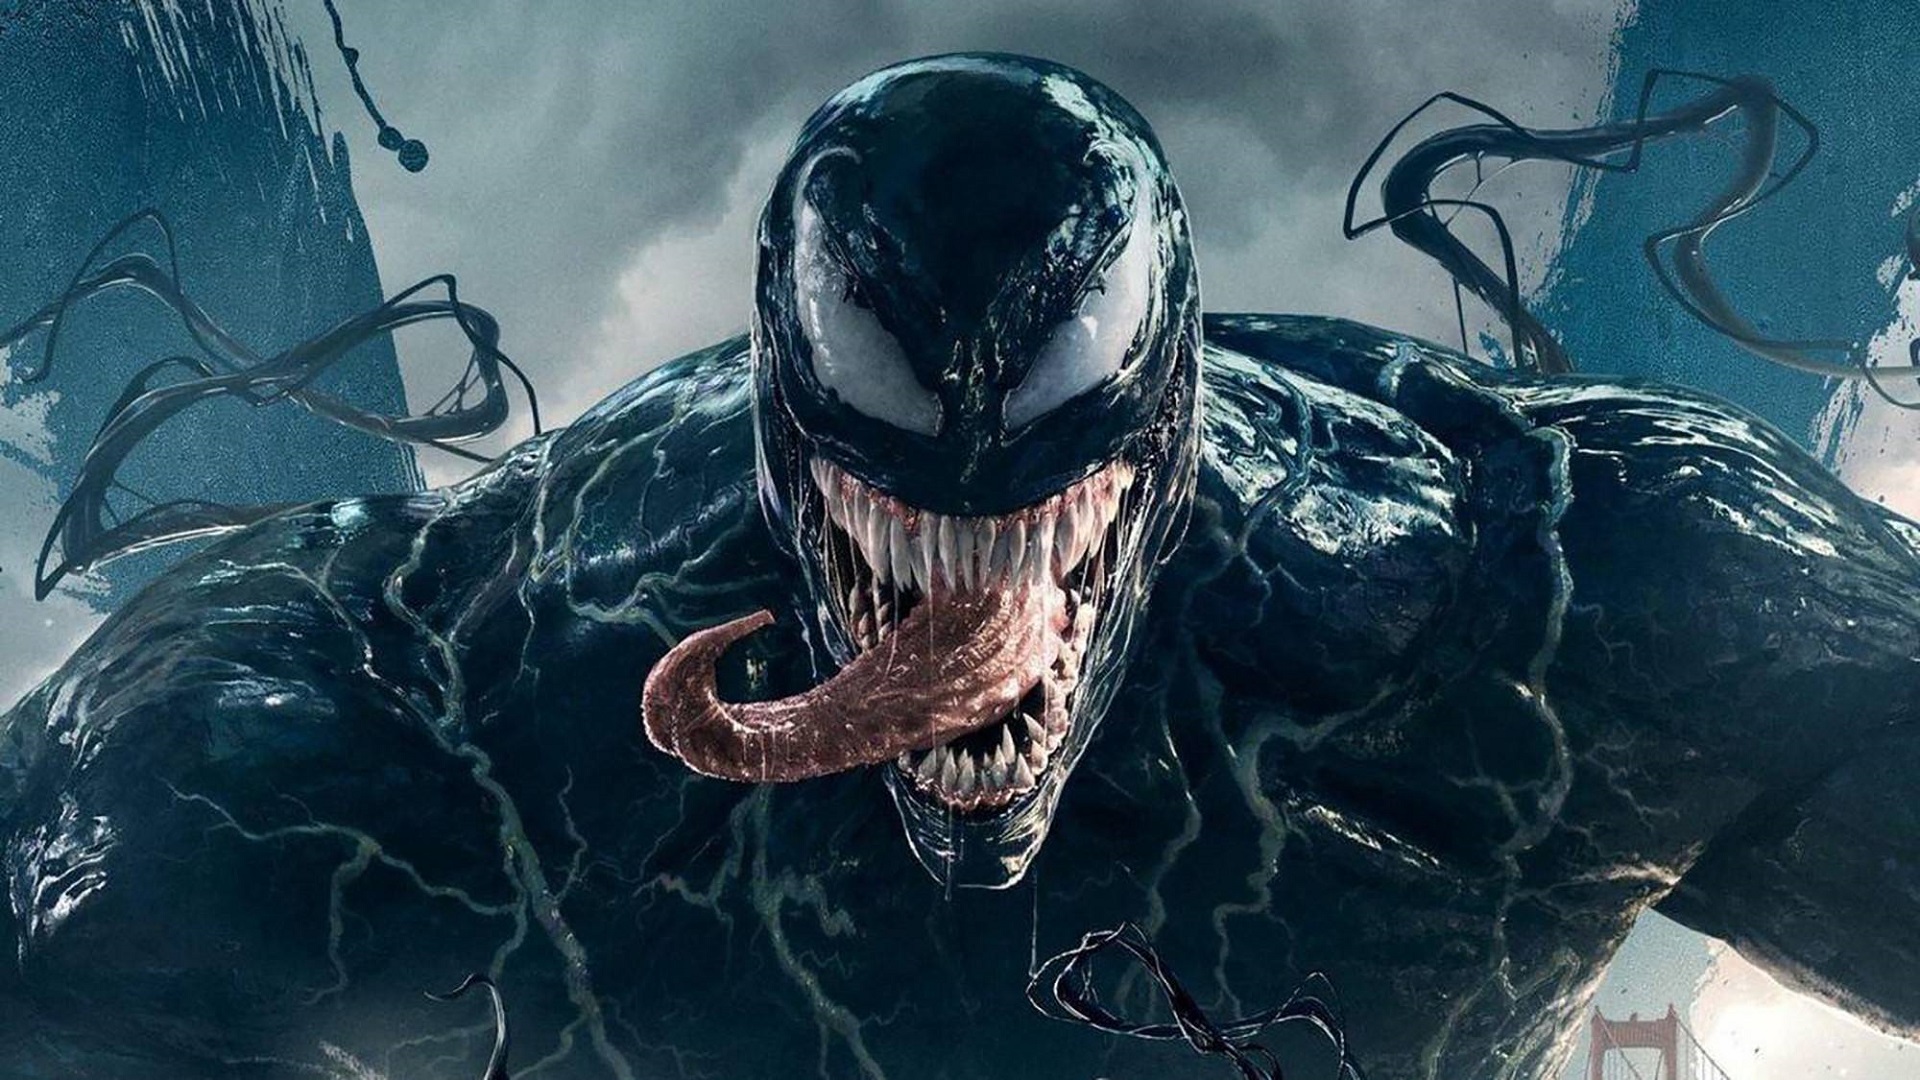 Une symbiose entre le cinéma et la science : une nouvelle espèce d'araignée venimeuse a été découverte en Australie et baptisée du nom de Tom Hardy, l'anti-héros de Marvel.